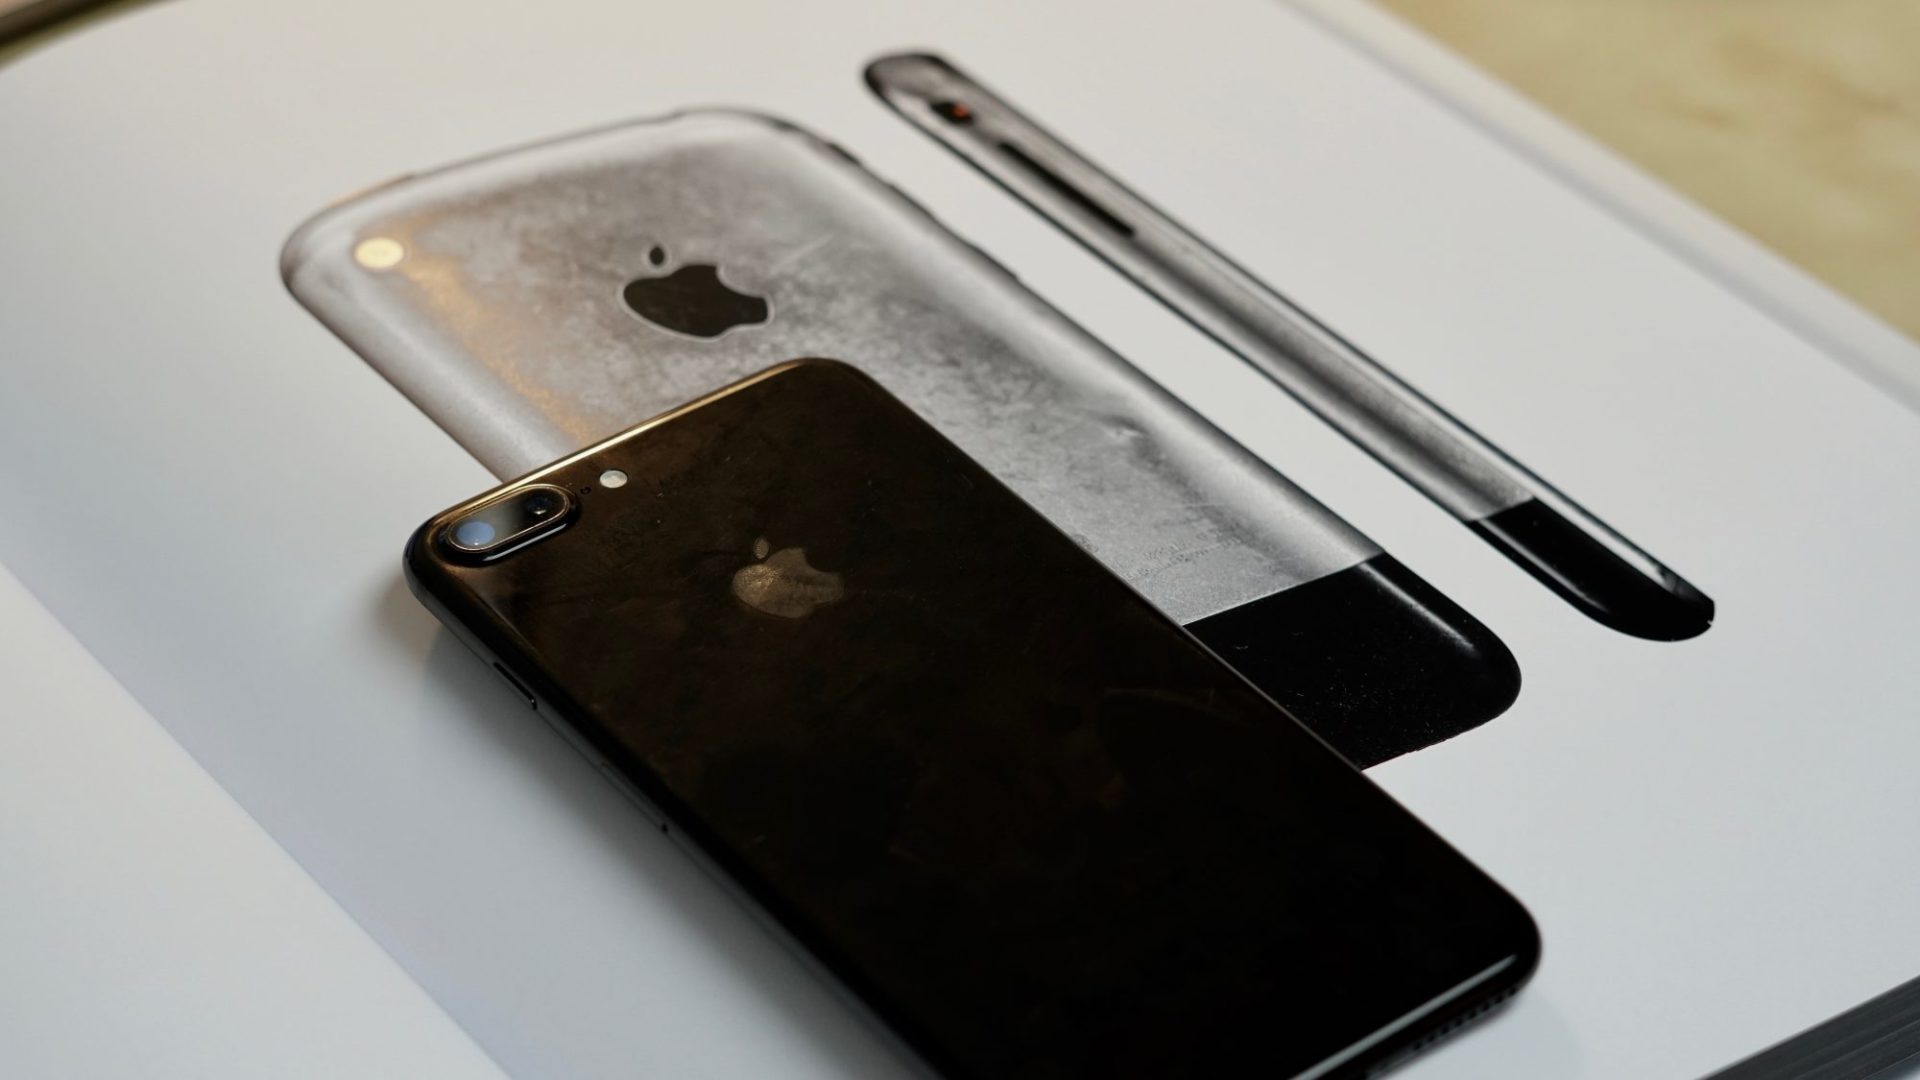 ลือ iPhone 8 อาจมาพร้อมดีไซน์เครื่องทรงหยดน้ำ ขอบเครื่องโค้งมนเหมือนรุ่นแรก